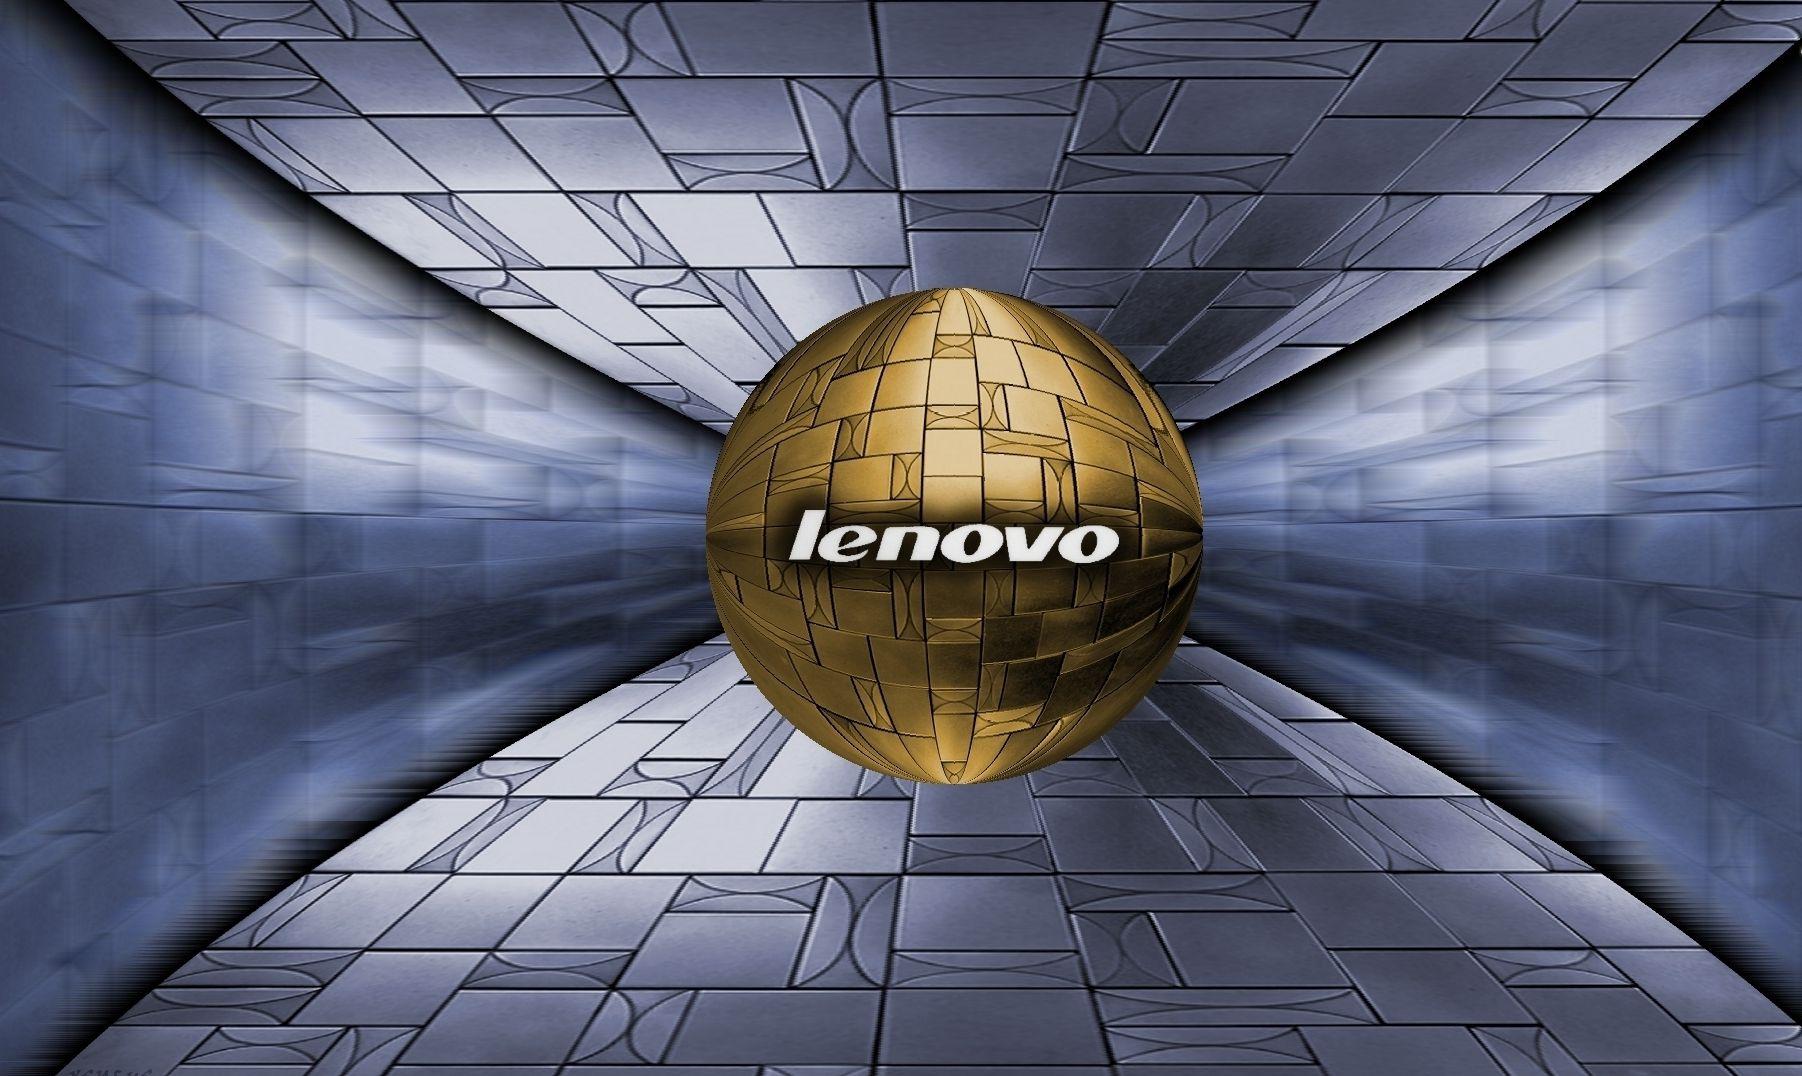 Space Lenovo Wallpapers: Vũ trụ luôn gây cho chúng ta cảm giác kì lạ và thú vị. Sự tích hợp giữa chủ đề không gian và Lenovo có thể tạo ra những hình nền vô cùng hấp dẫn cho màn hình máy tính của bạn. Hãy xem qua bộ sưu tập Space Lenovo Wallpapers để tìm kiếm những hình ảnh đẹp và đầy kì vị! 